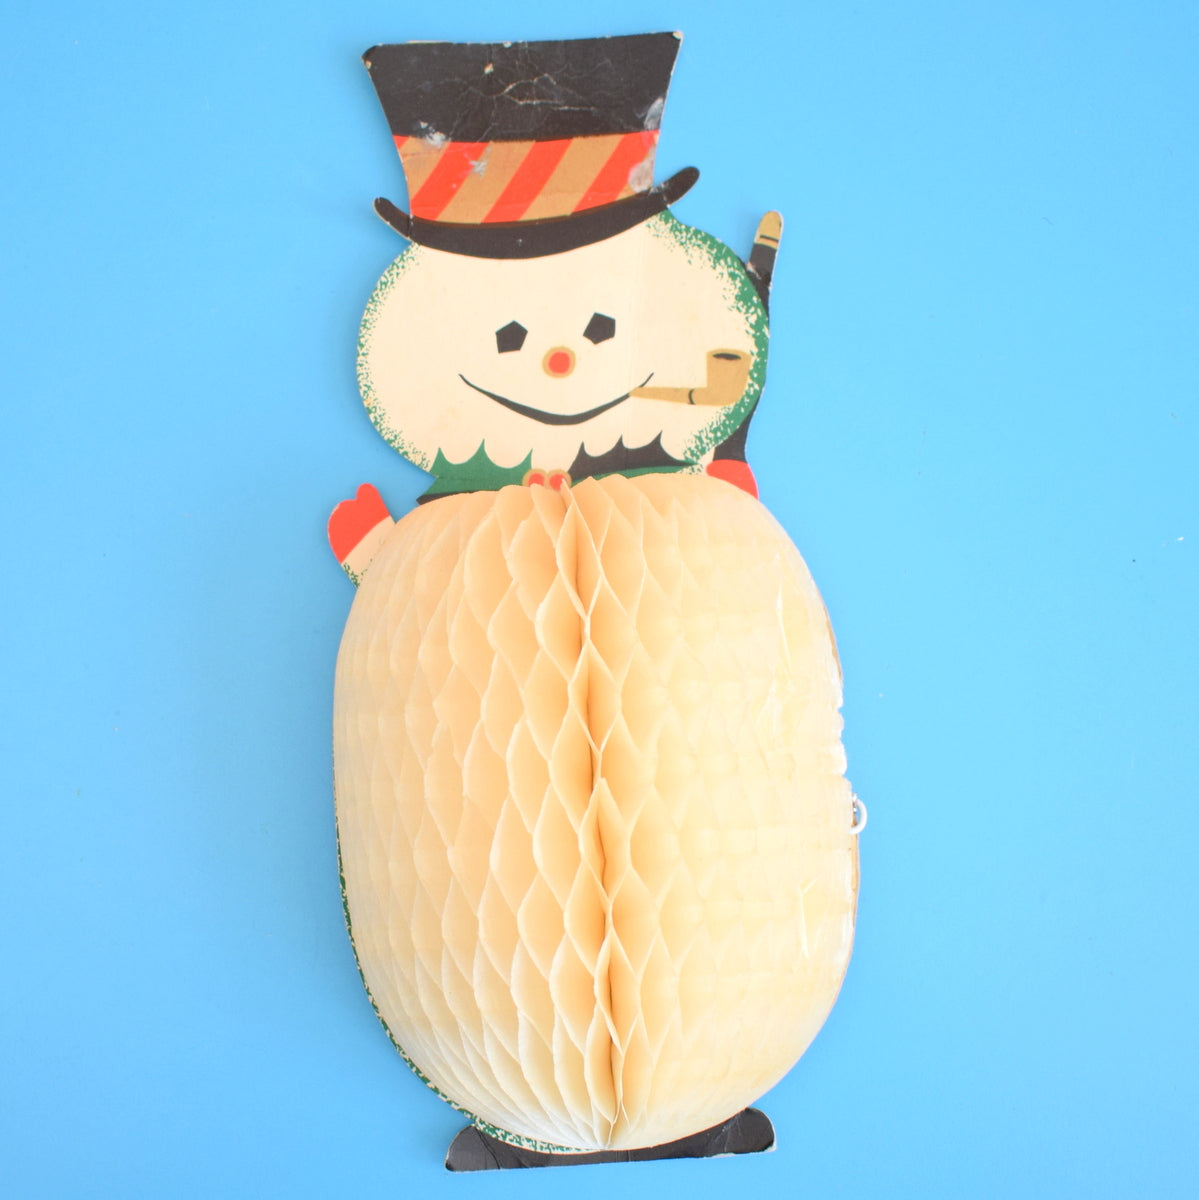 Vintage 1950s Honeycomb Paper Decorations - Snowman / Choir Boy